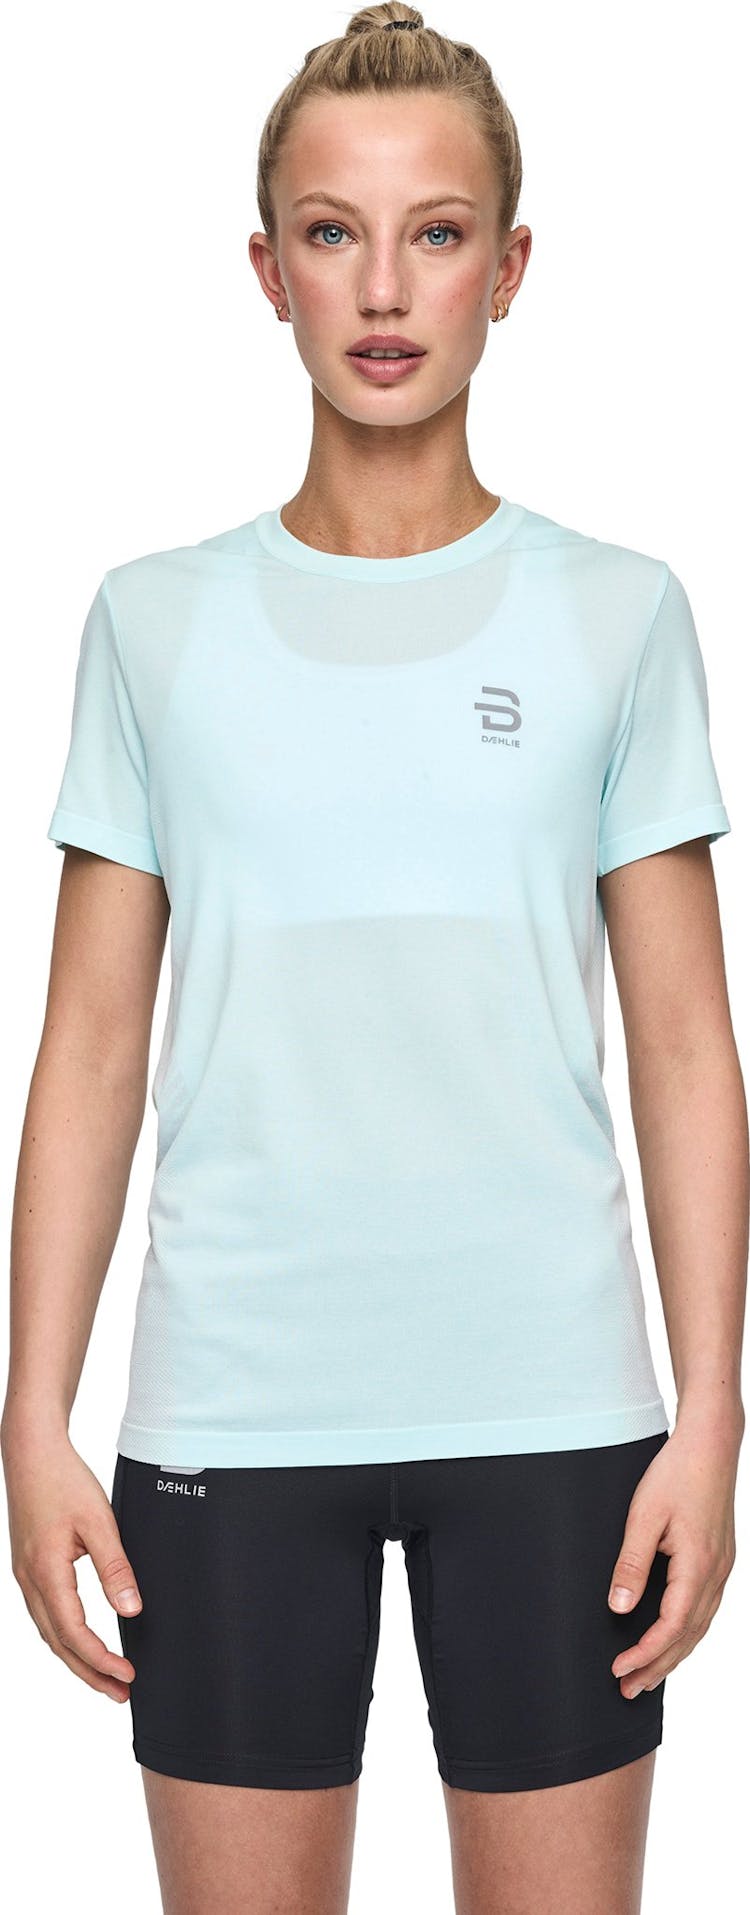 Numéro de l'image de la galerie de produits 6 pour le produit T-shirt à manches courtes Direction - Femme